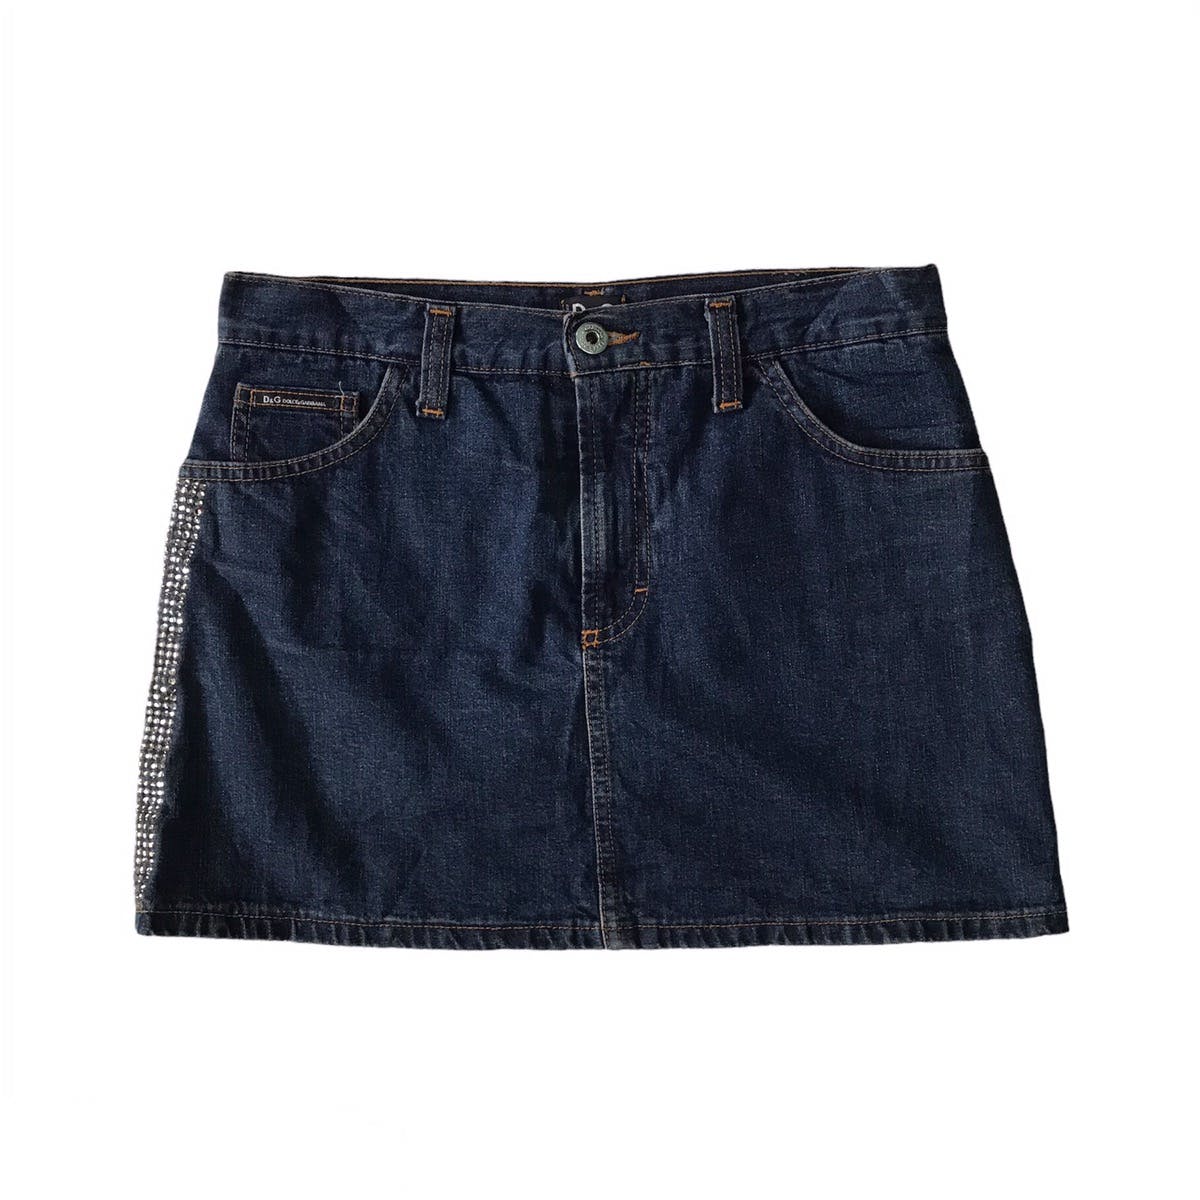 💥Steals💥D&G Dolce & Gabbana Skirt Jeans - 1